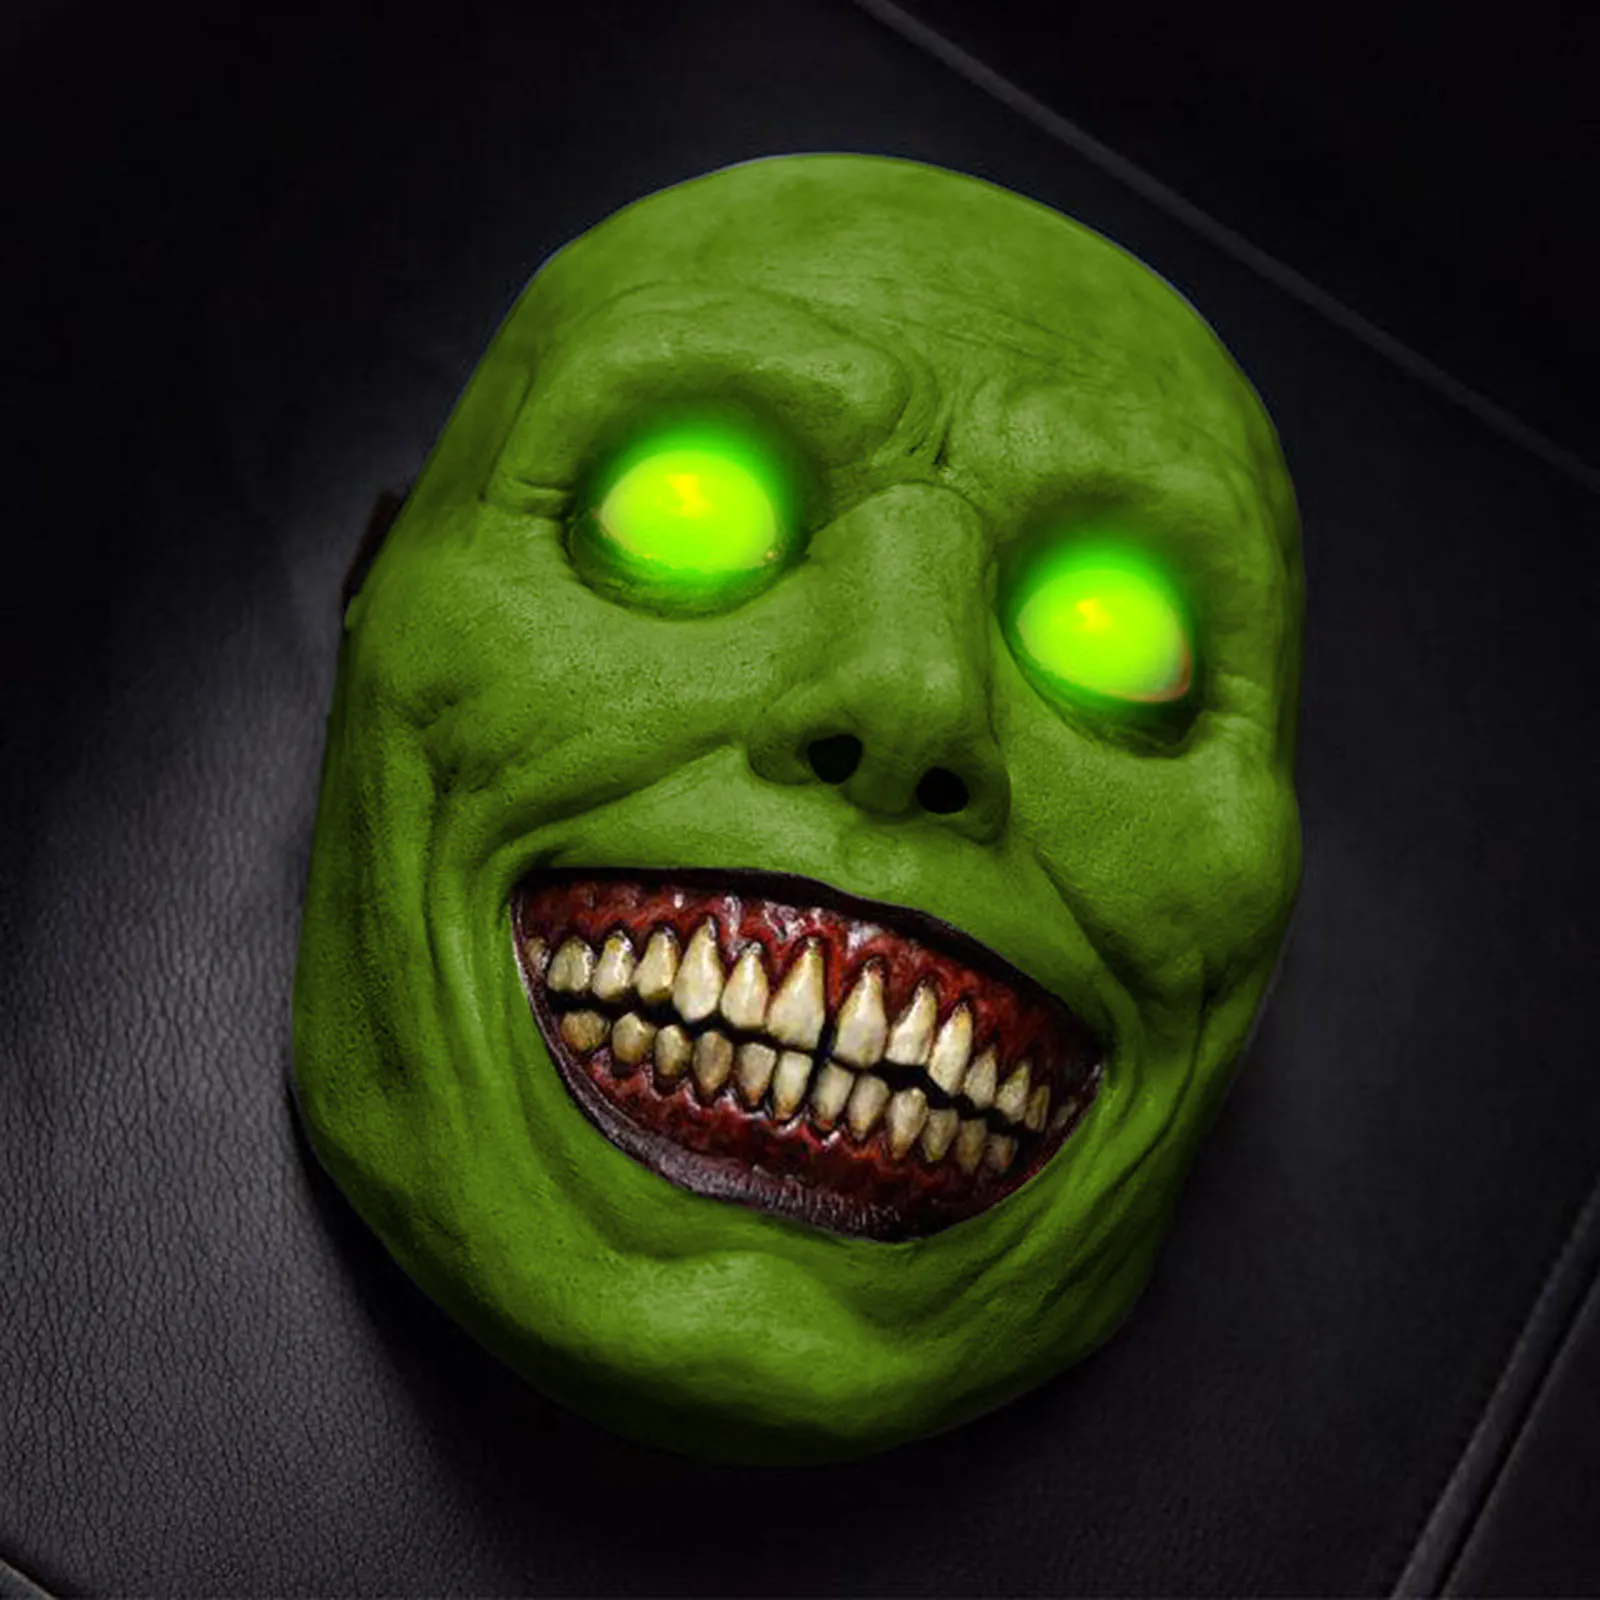 Compra online de Máscara de terror de Halloween COS Exorcista